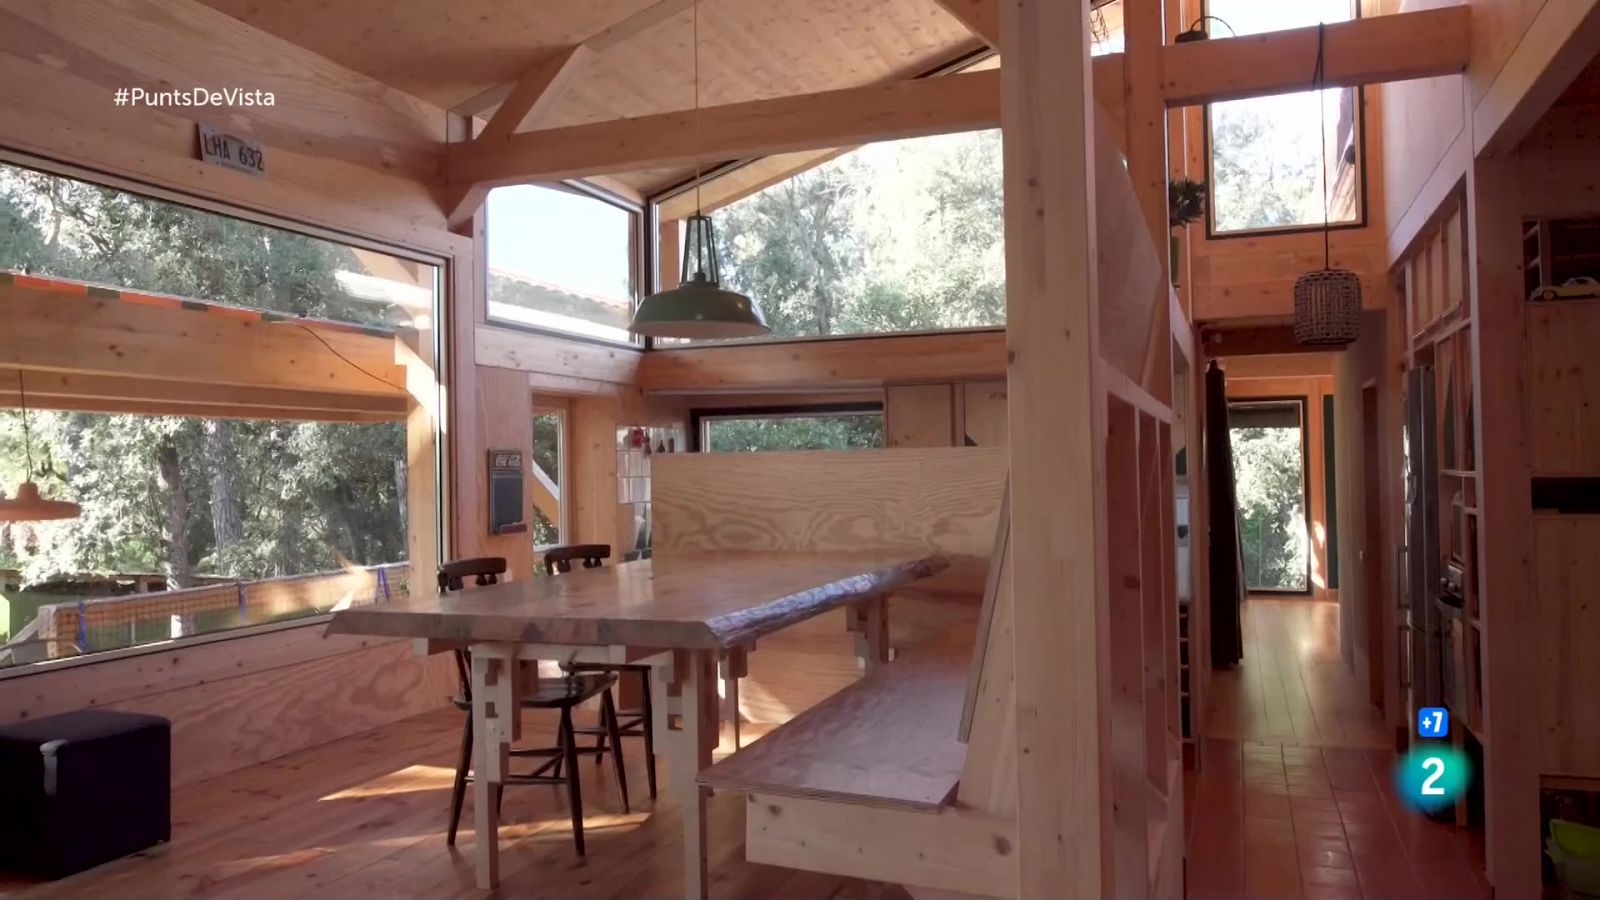 Punts de vista - Núria Moliner ens descobreix una casa integrada al bosc del Montseny